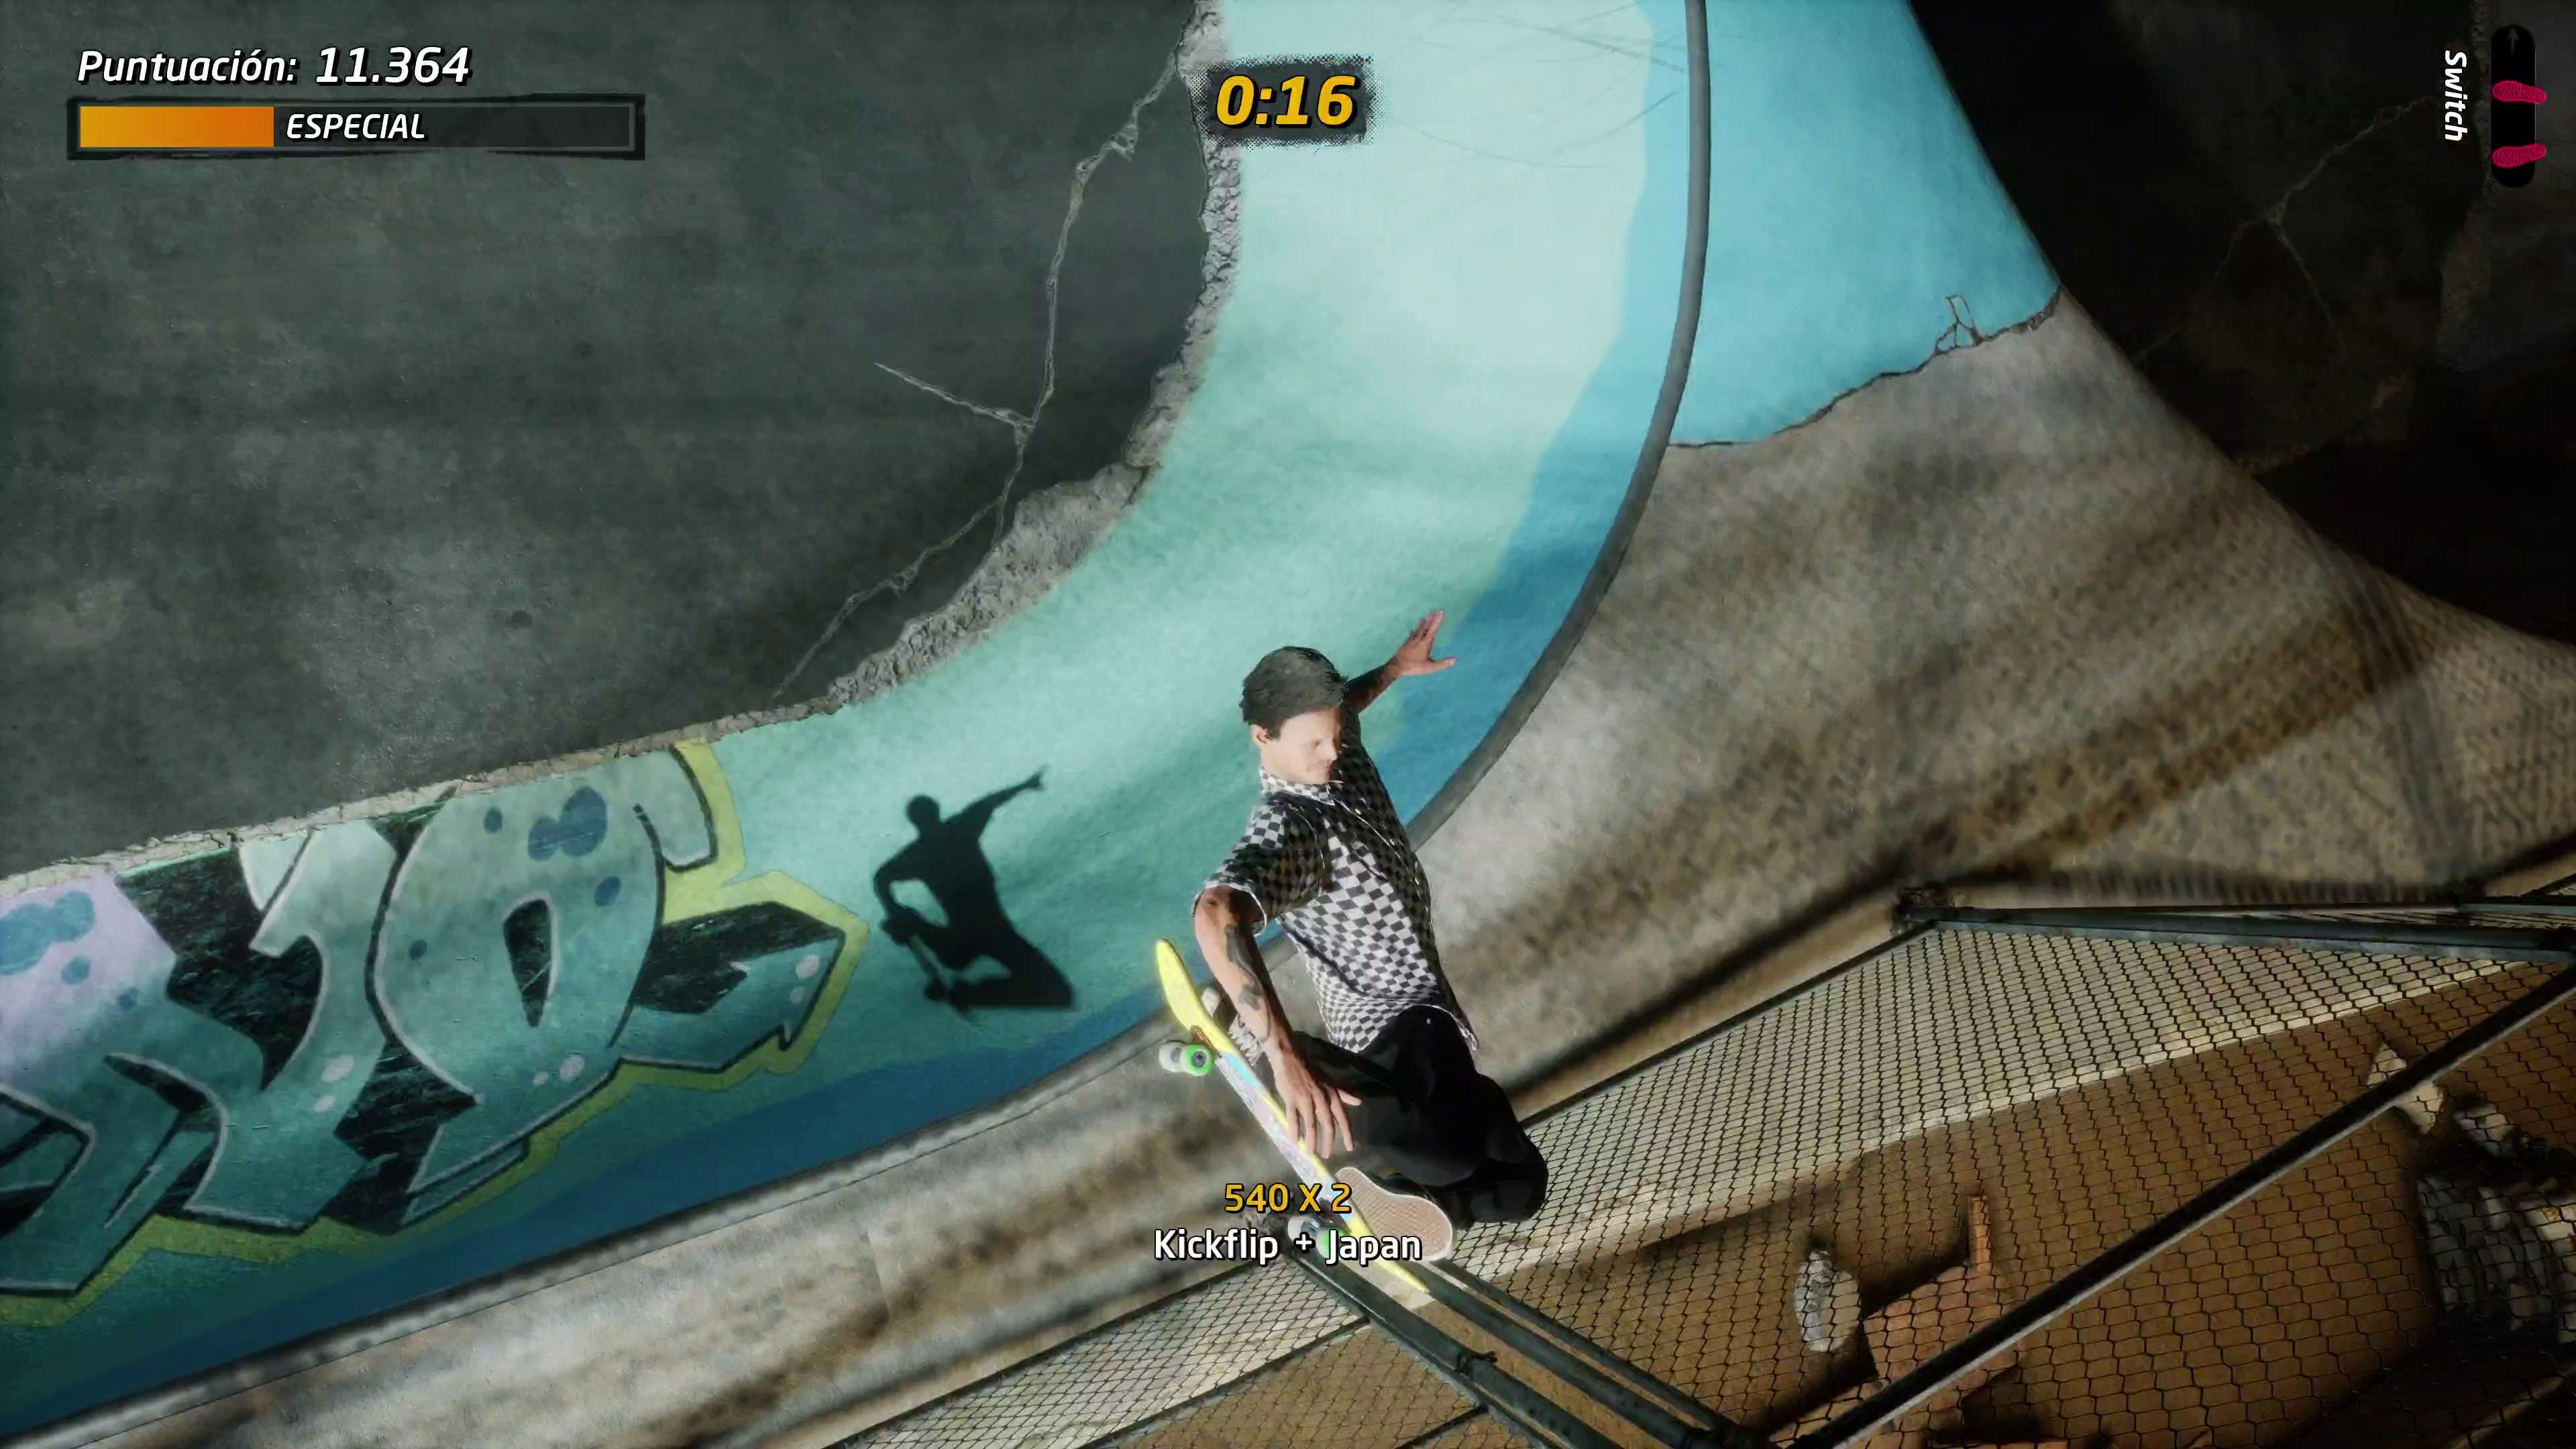 Tony Hawk's Pro Skater 1 + 2 PS5 Xbox Series X|S